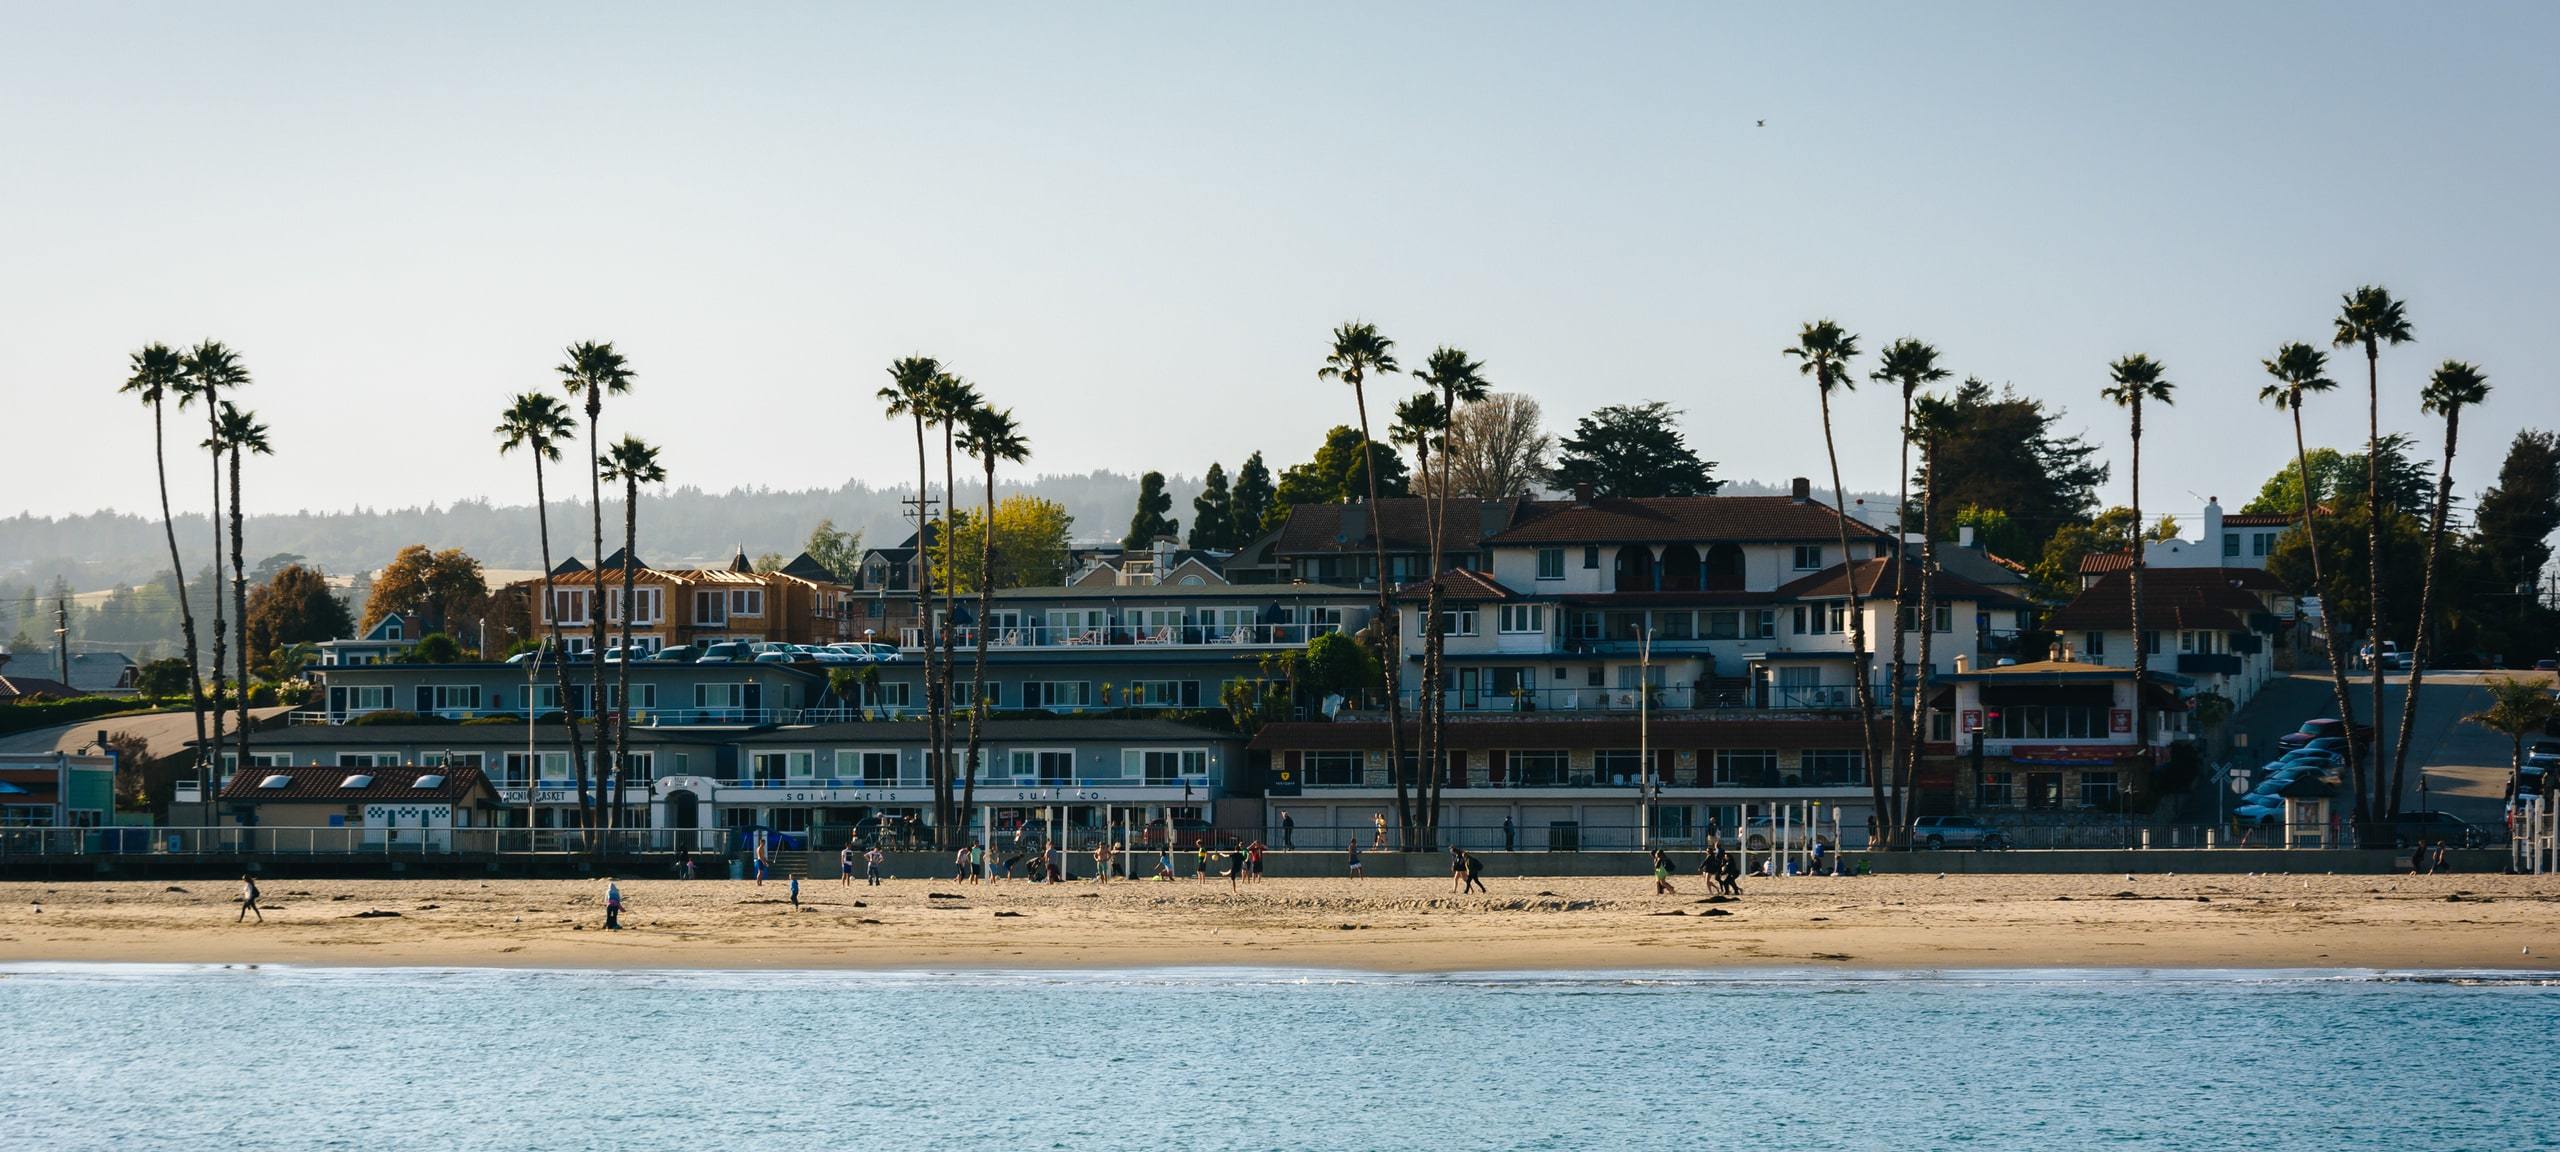 Properties long the sunny beach in Santa Cruz, California